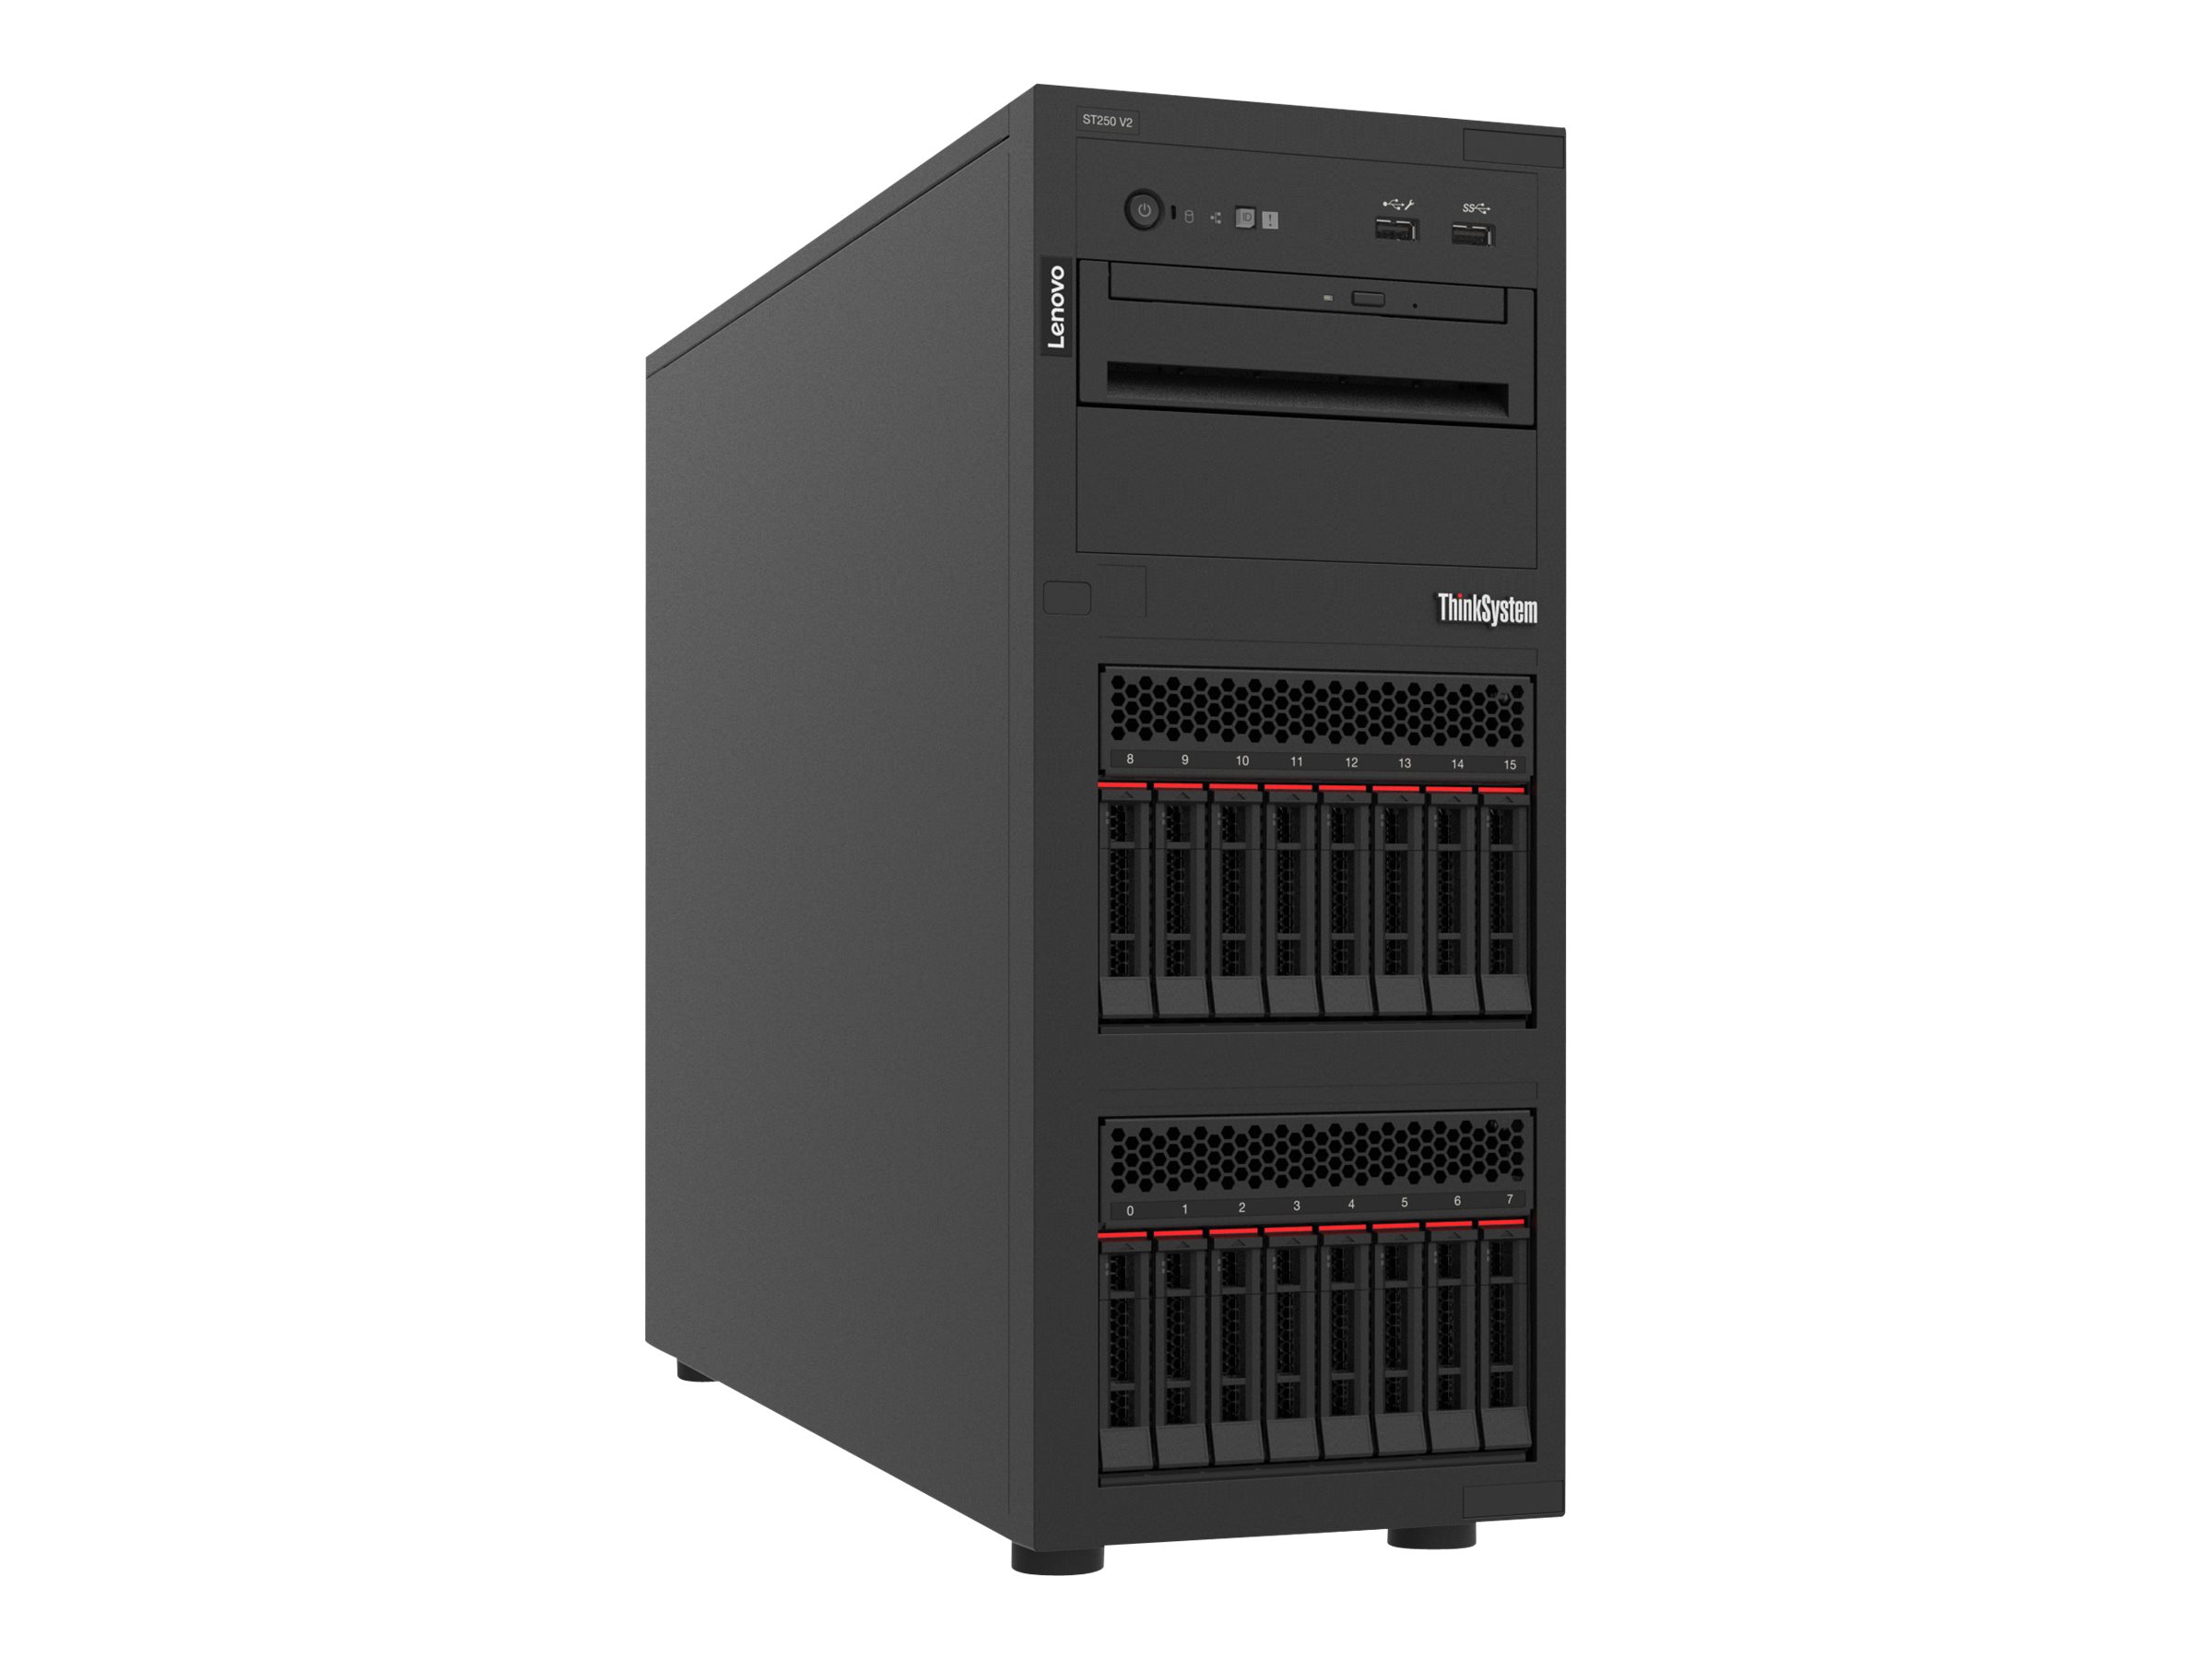 Lenovo ThinkSystem ST250 V2 7D8F - Server - Tower - 4U - 1-Weg - 1 x Xeon E-2378 / 2.6 GHz - RAM 16 GB - Hot-Swap 6.4 cm (2.5") Schacht/Schächte - keine HDD - Matrox G200 - GigE - kein Betriebssystem - Monitor: keiner